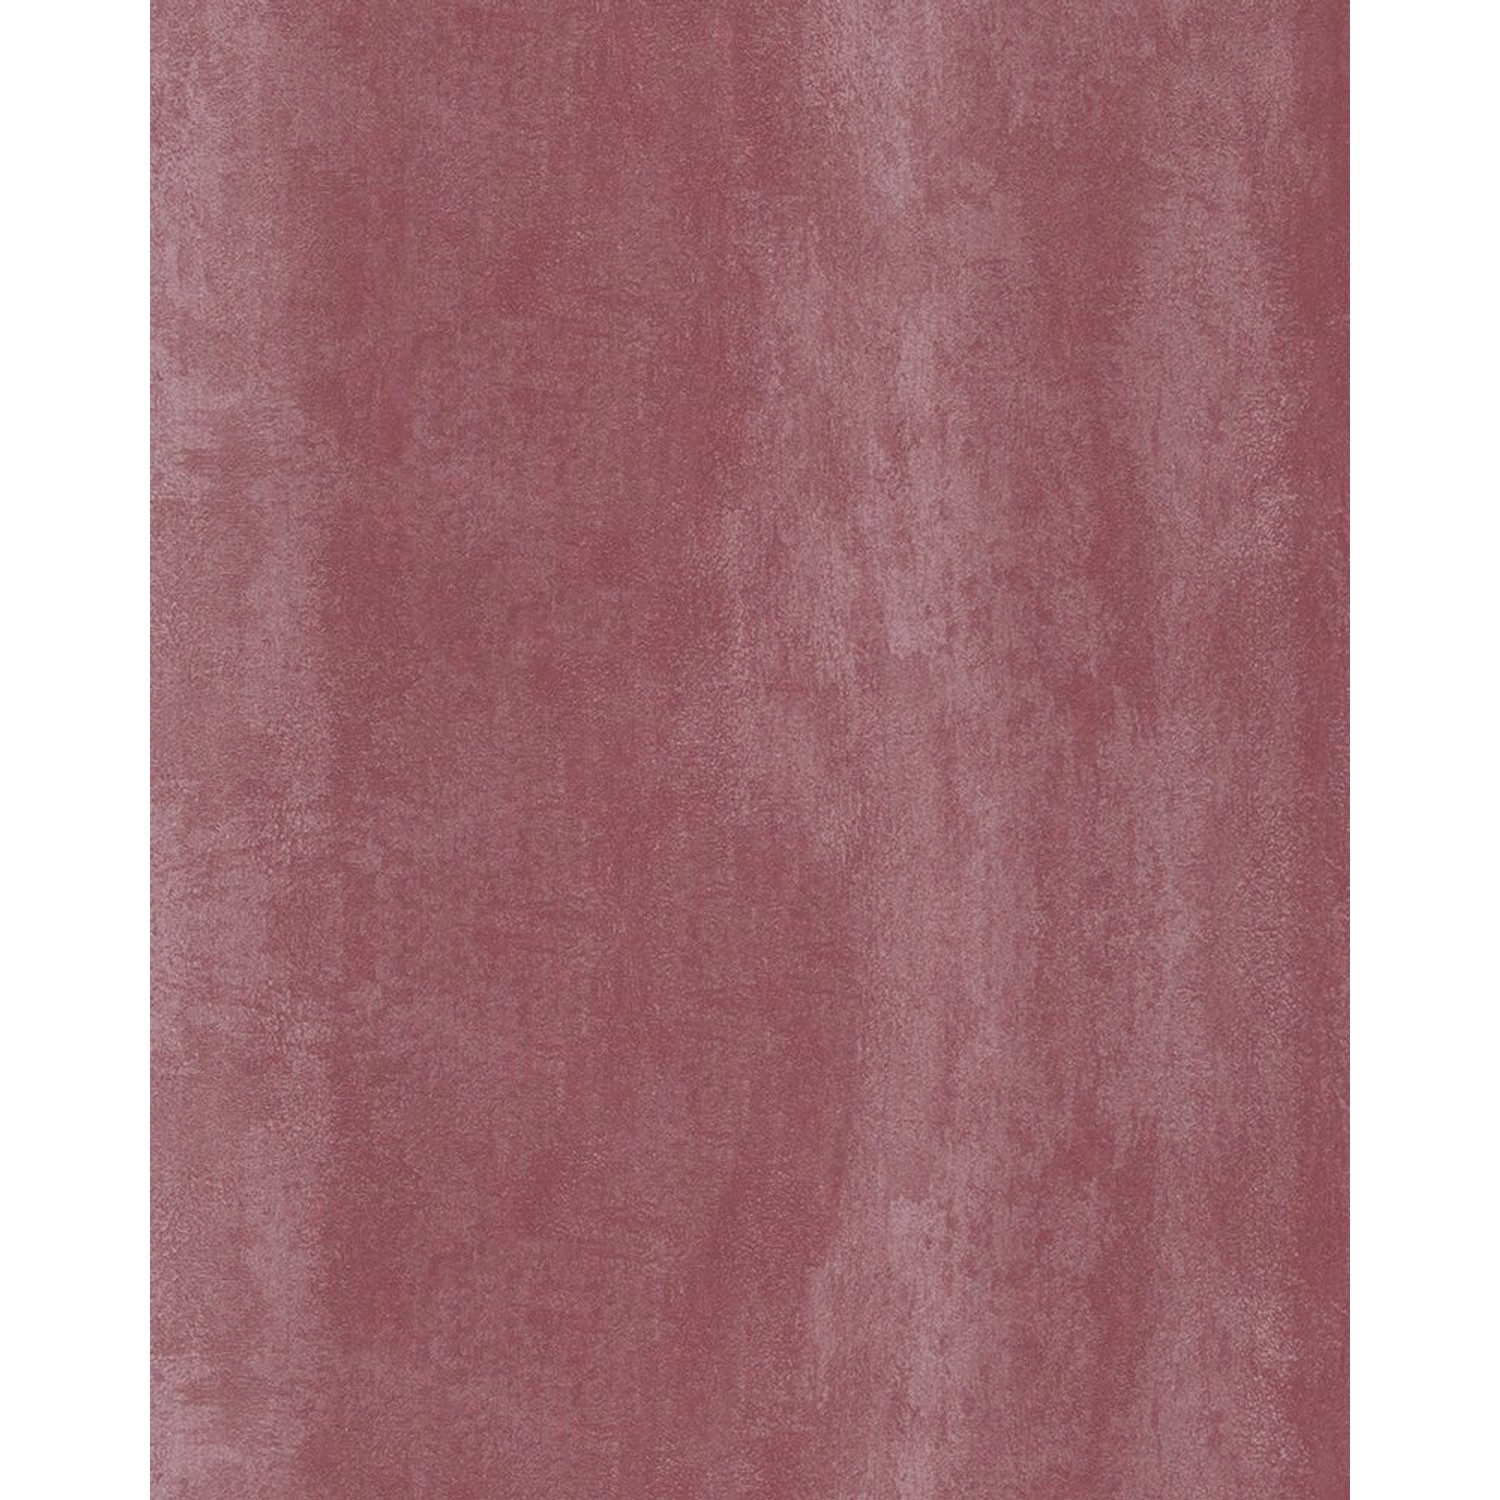 Marburg Vliestapete Uni Texturiert Rot 10,05 m x 0,53 m FSC® von Marburg